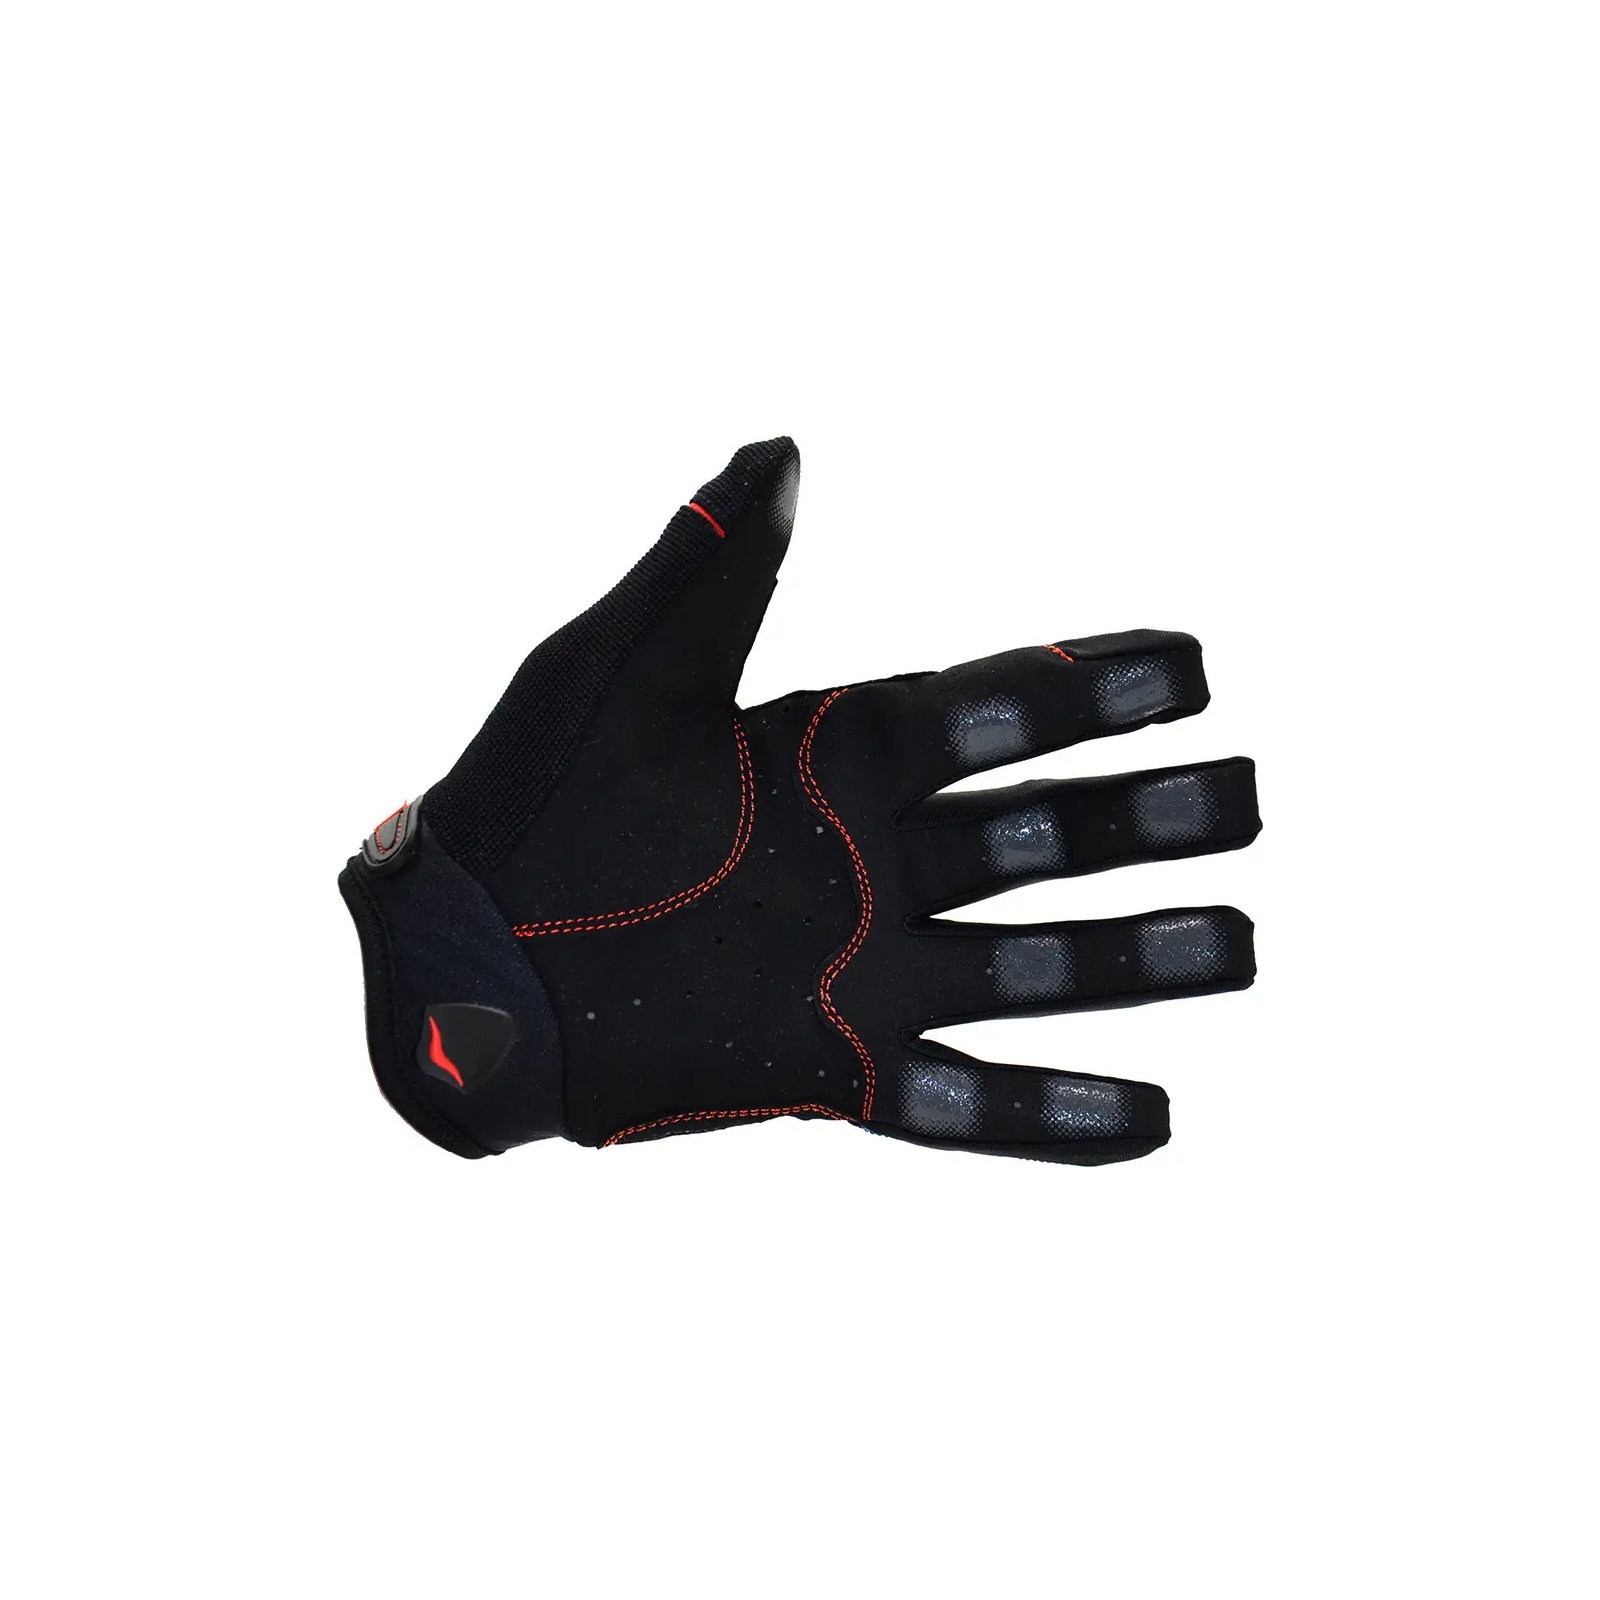 Рукавички для фітнесу MadMax MXG-102 X Gloves Black/Grey/White M (MXG-102-GRY_M) зображення 8